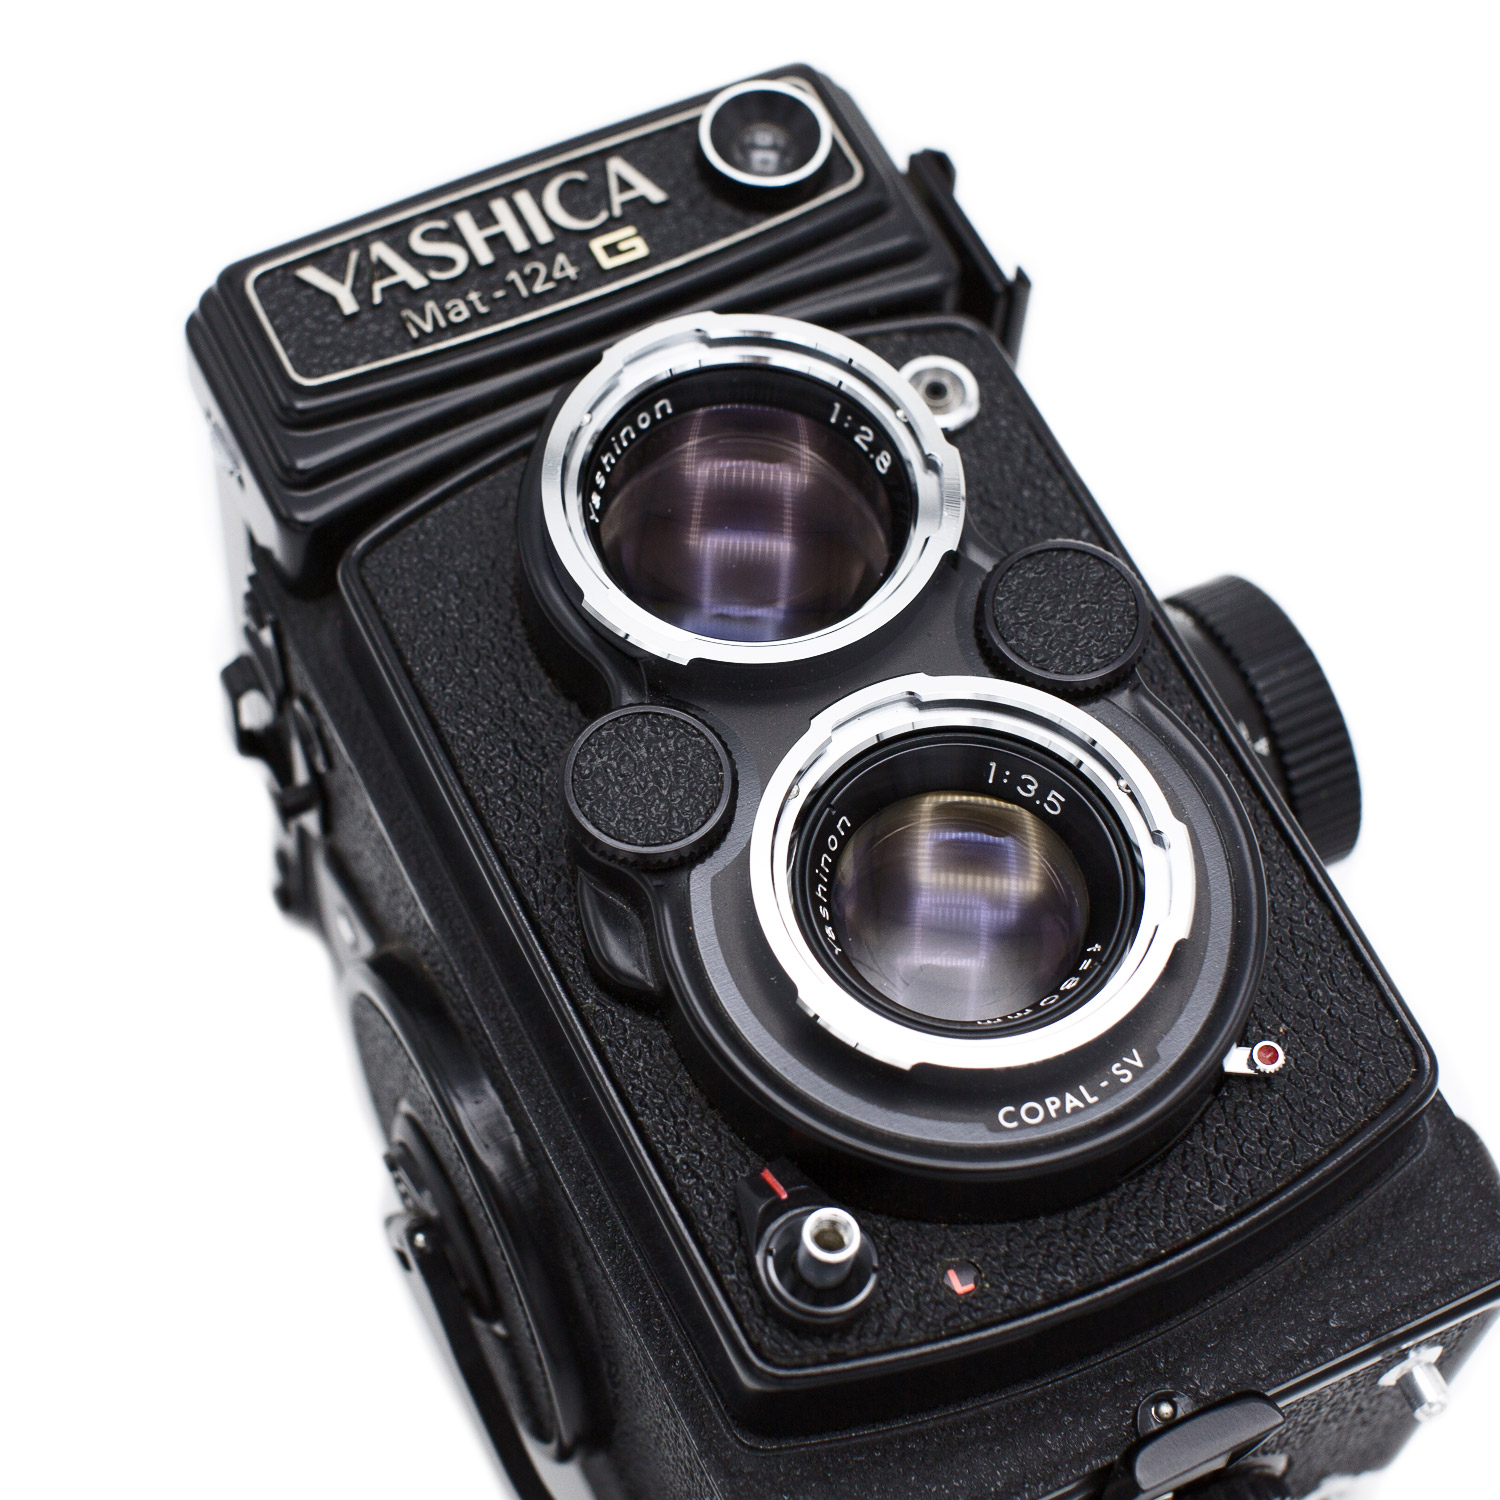 短納期・高品質  Mat-124G YASHICA フィルムカメラ